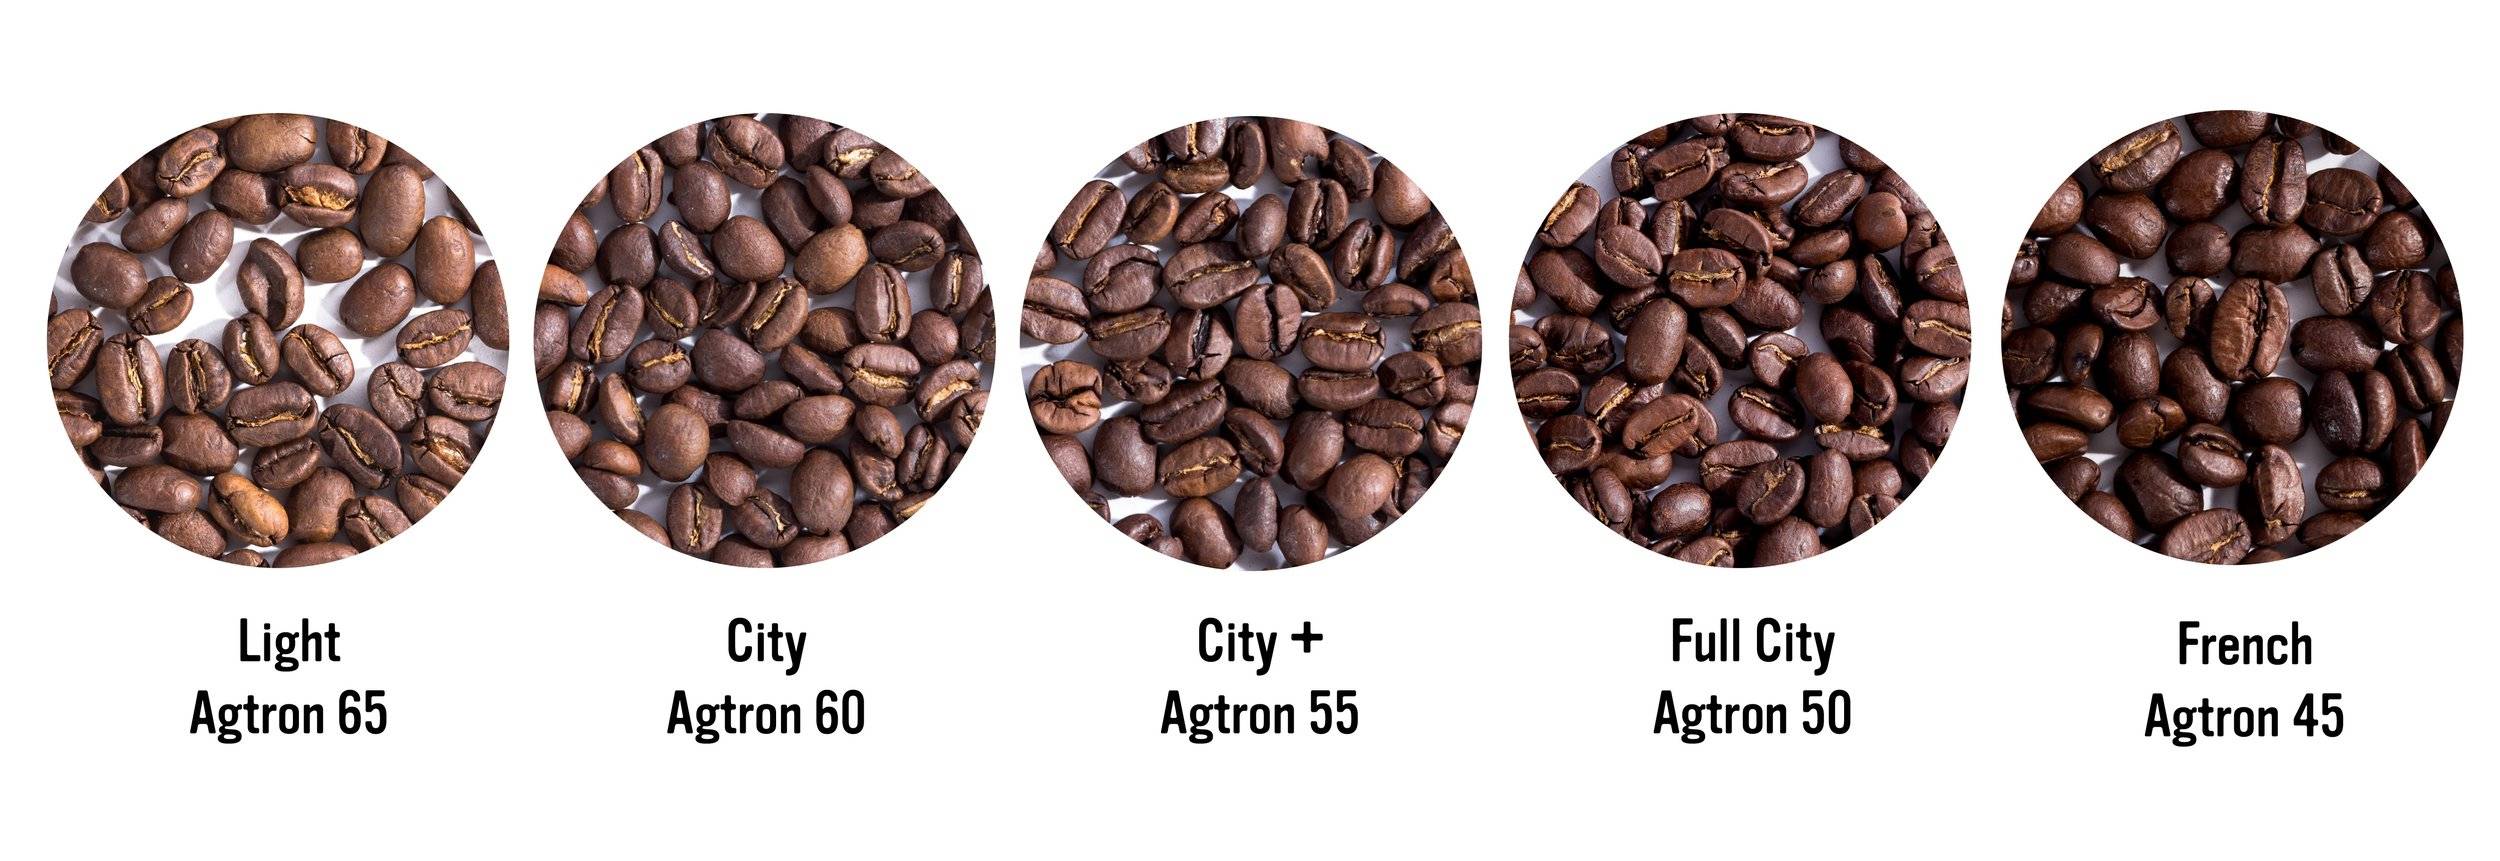 Обработка кофе: мытая и натуральная обработка